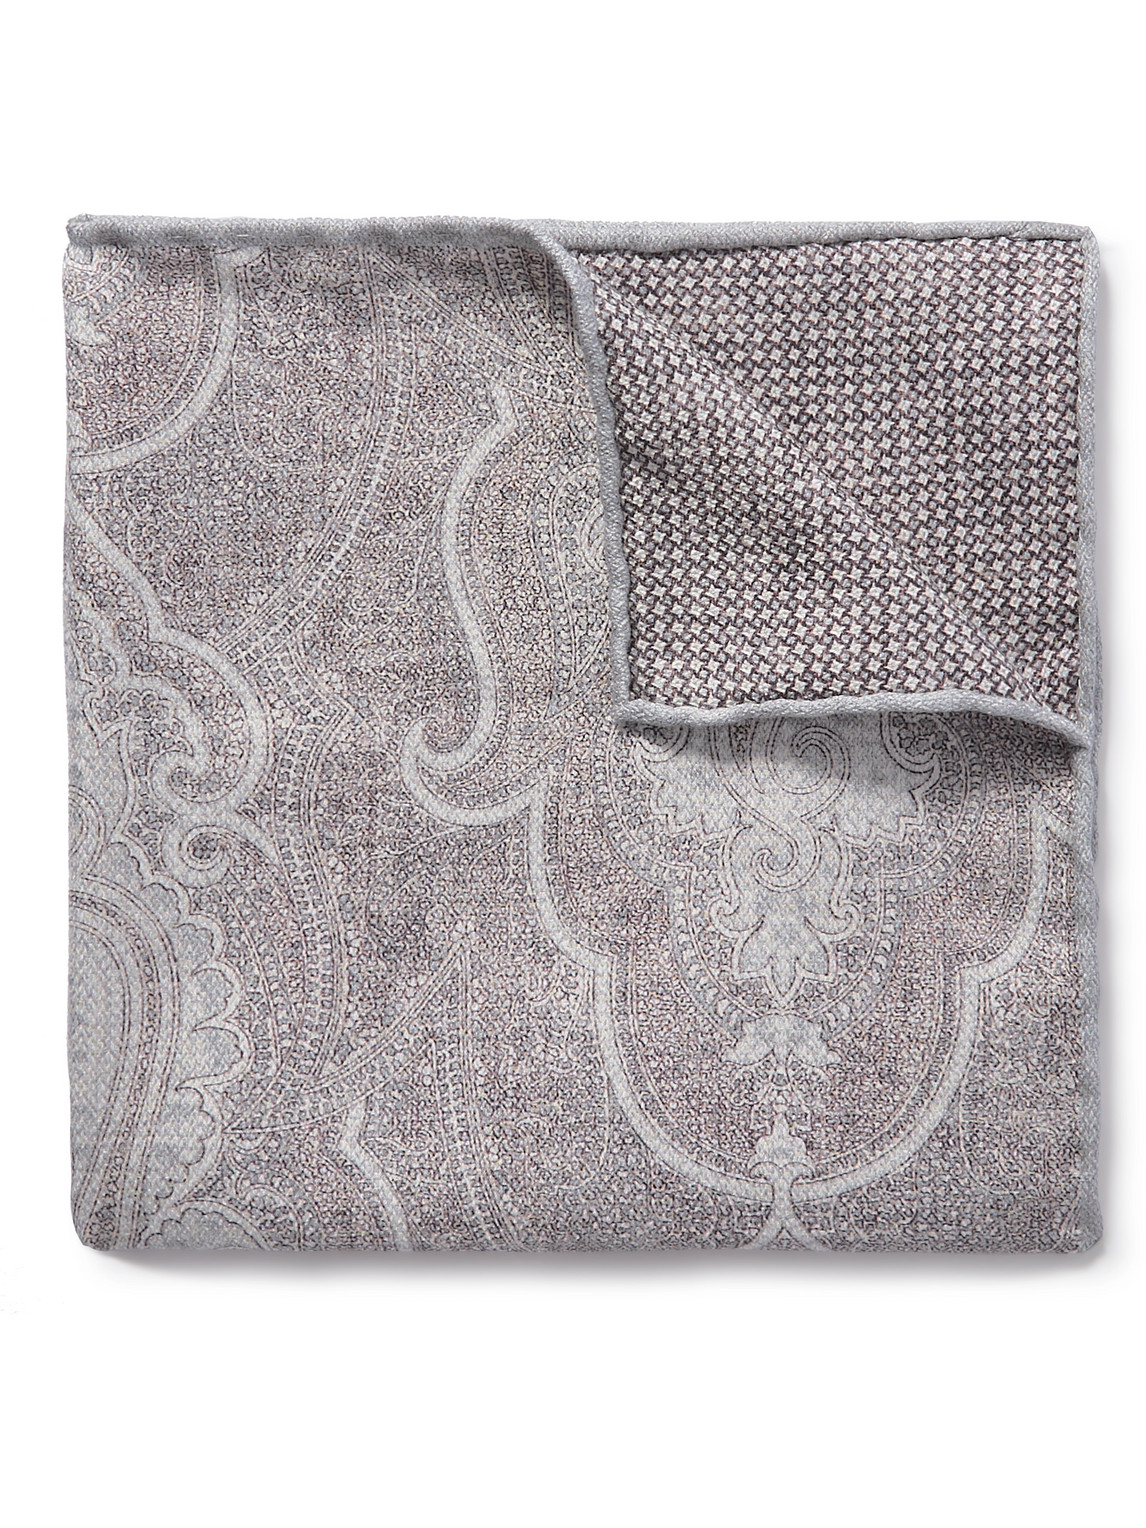 Brunello Cucinelli Reversible Printed Silk Pocket Square In Gray